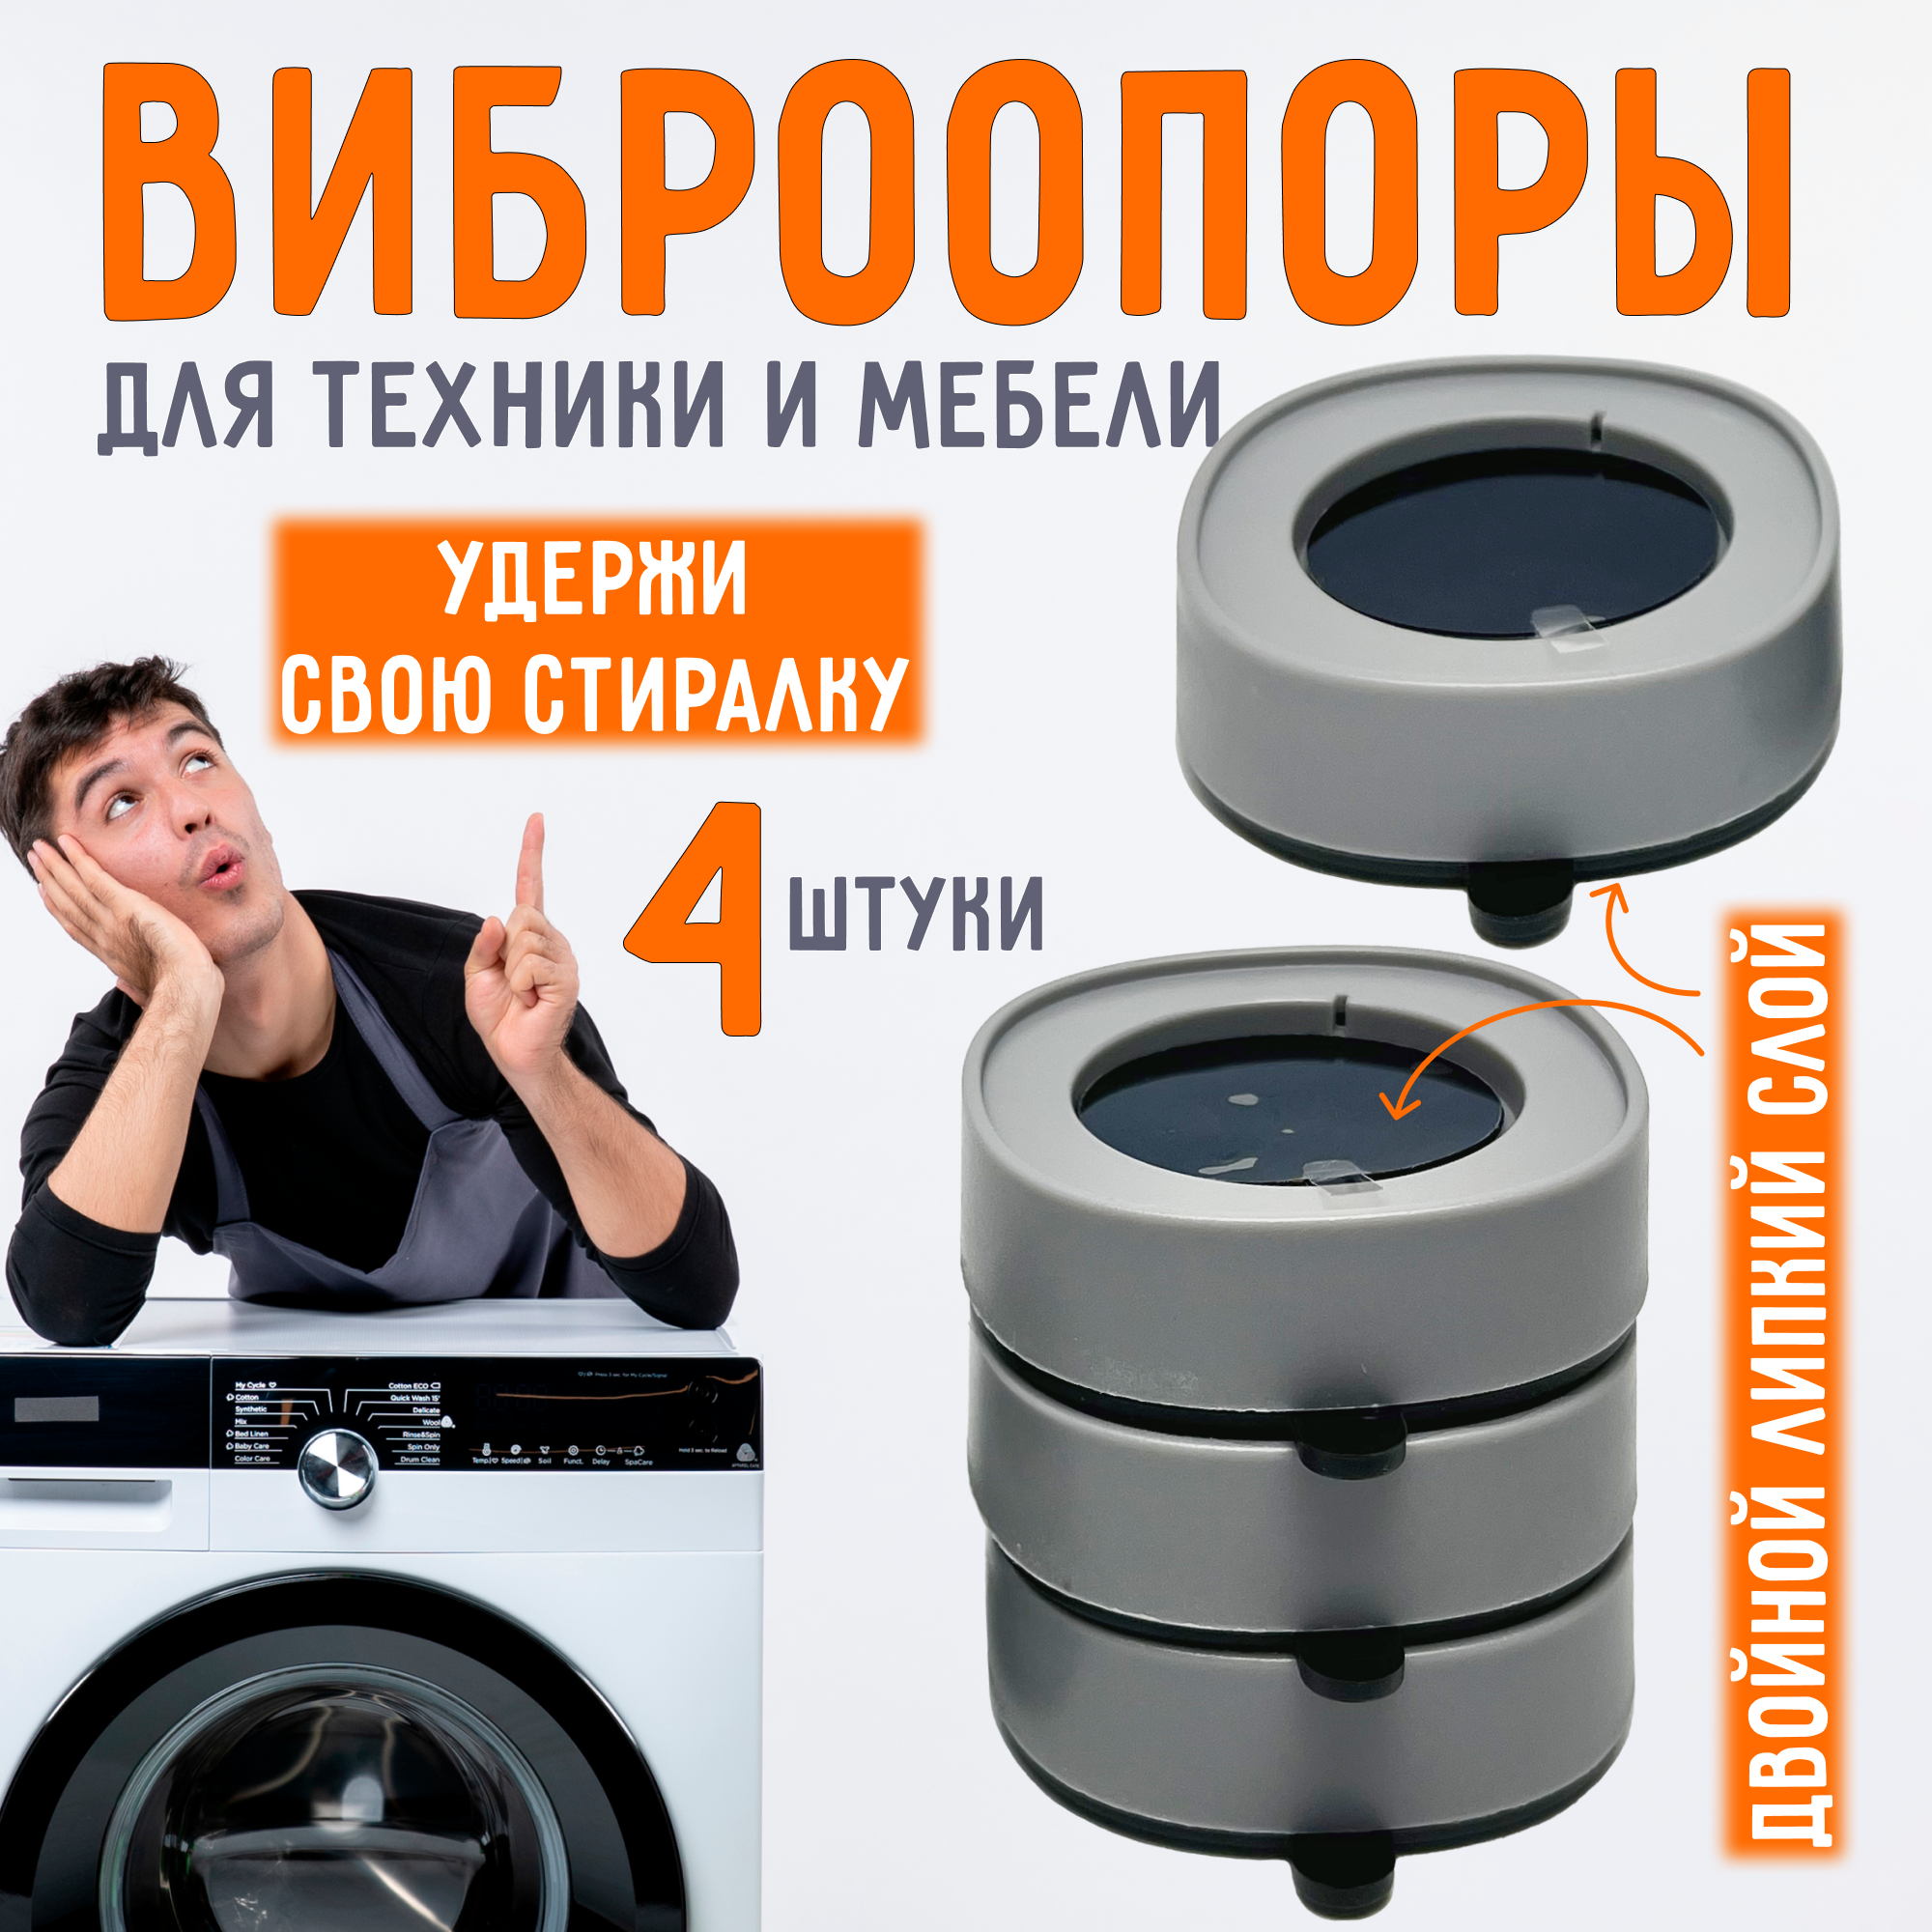 Антивибрационные подставки - ножки для стиральной машины холодильника мебели (виброопоры) круглые белые 4 штуки